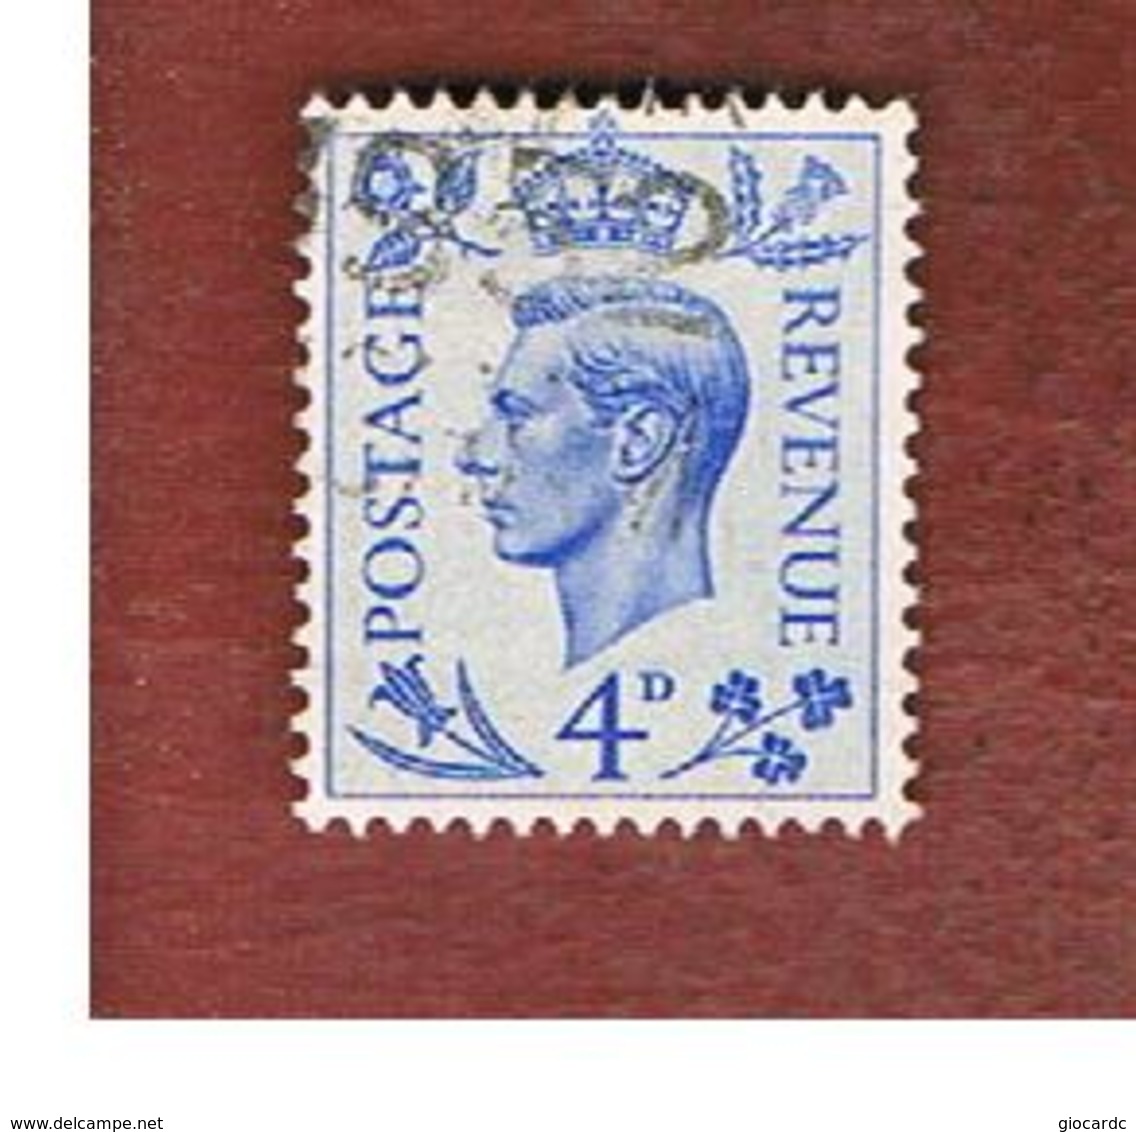 GRAN BRETAGNA (UNITED KINGDOM) -  SG 508   - 1950  KING GEORGE VI 4 BLUE  - USED° - Usati